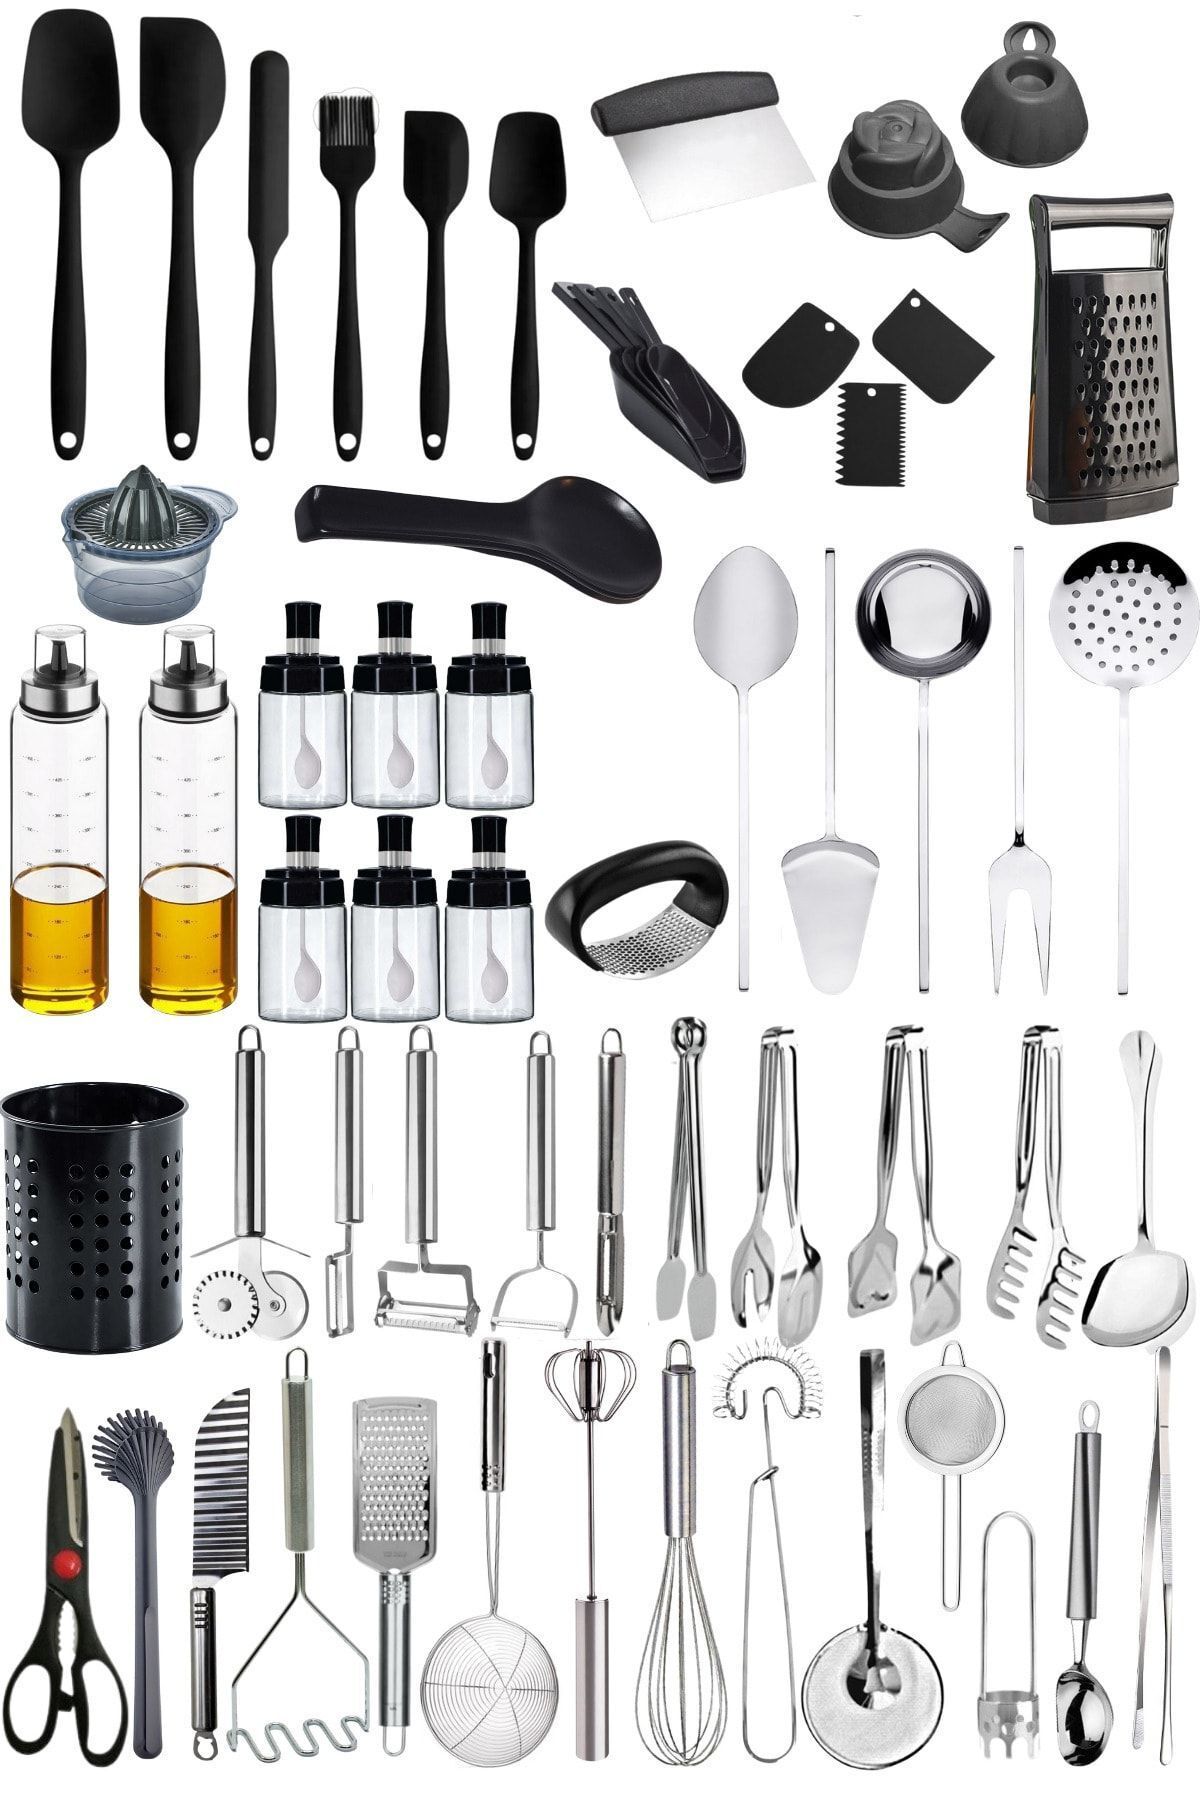 Mirilliahome Silikon Spatula Seti - Mutfak Için Yüksek Isıya Dayanıklı Spatulalar - Mutfak Tamamlayıcı Set